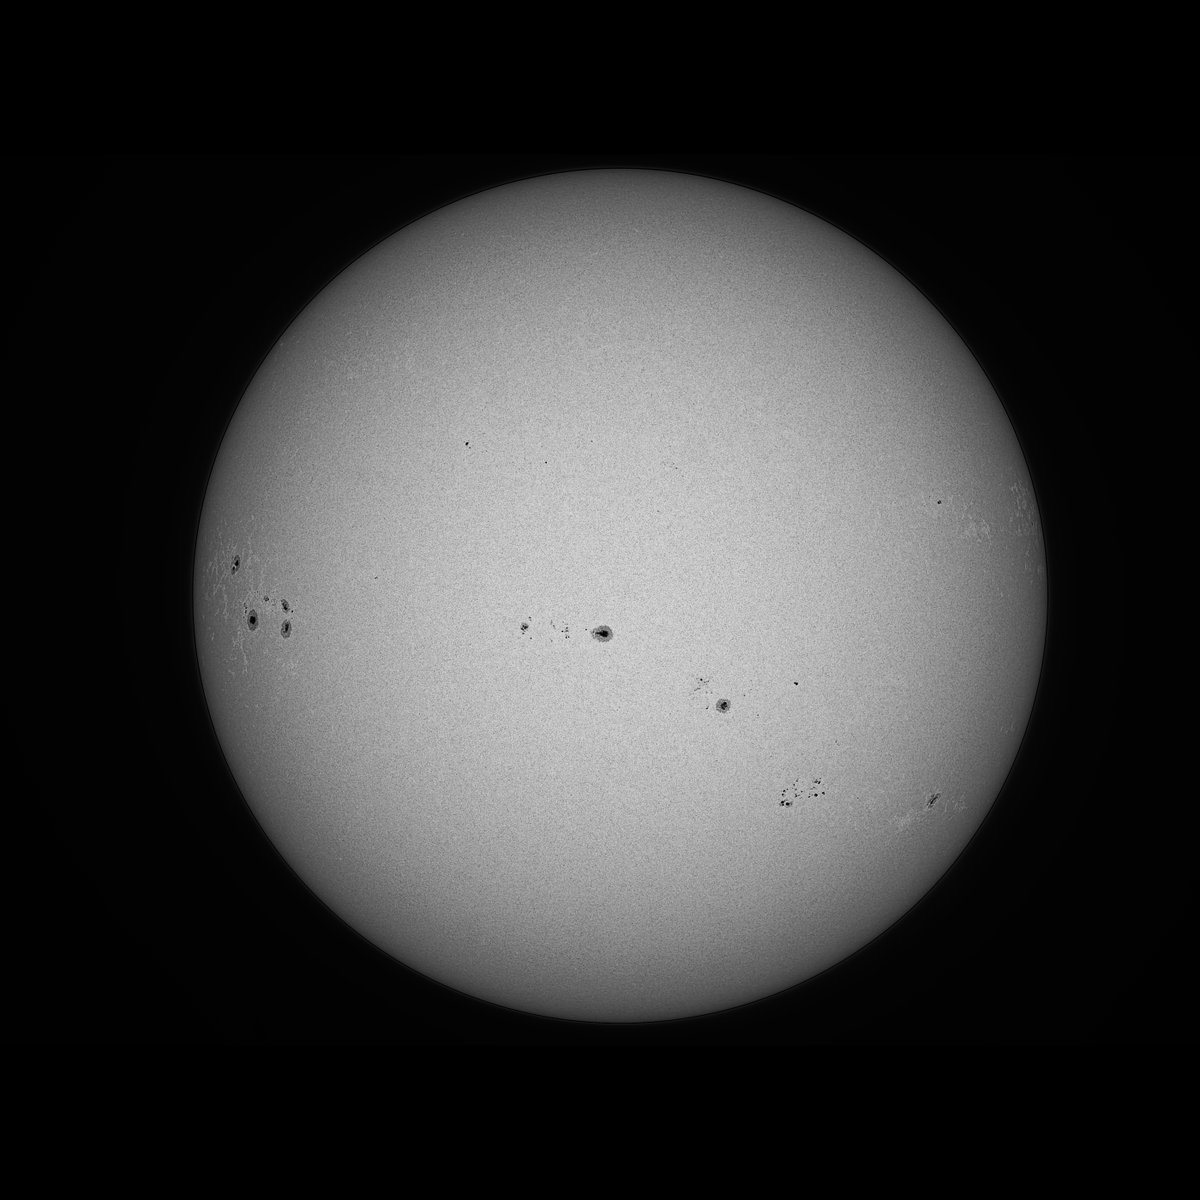 05/18 09:19 (UTC+9) 名古屋の太陽(53/139) 午前中の彩層面、X線レベルは数回上がったりしているのですがフレア発生まではいかずエネルギ充電中と感じ、周辺は南東に比較的大き目のプロミネンスが目を引いていました